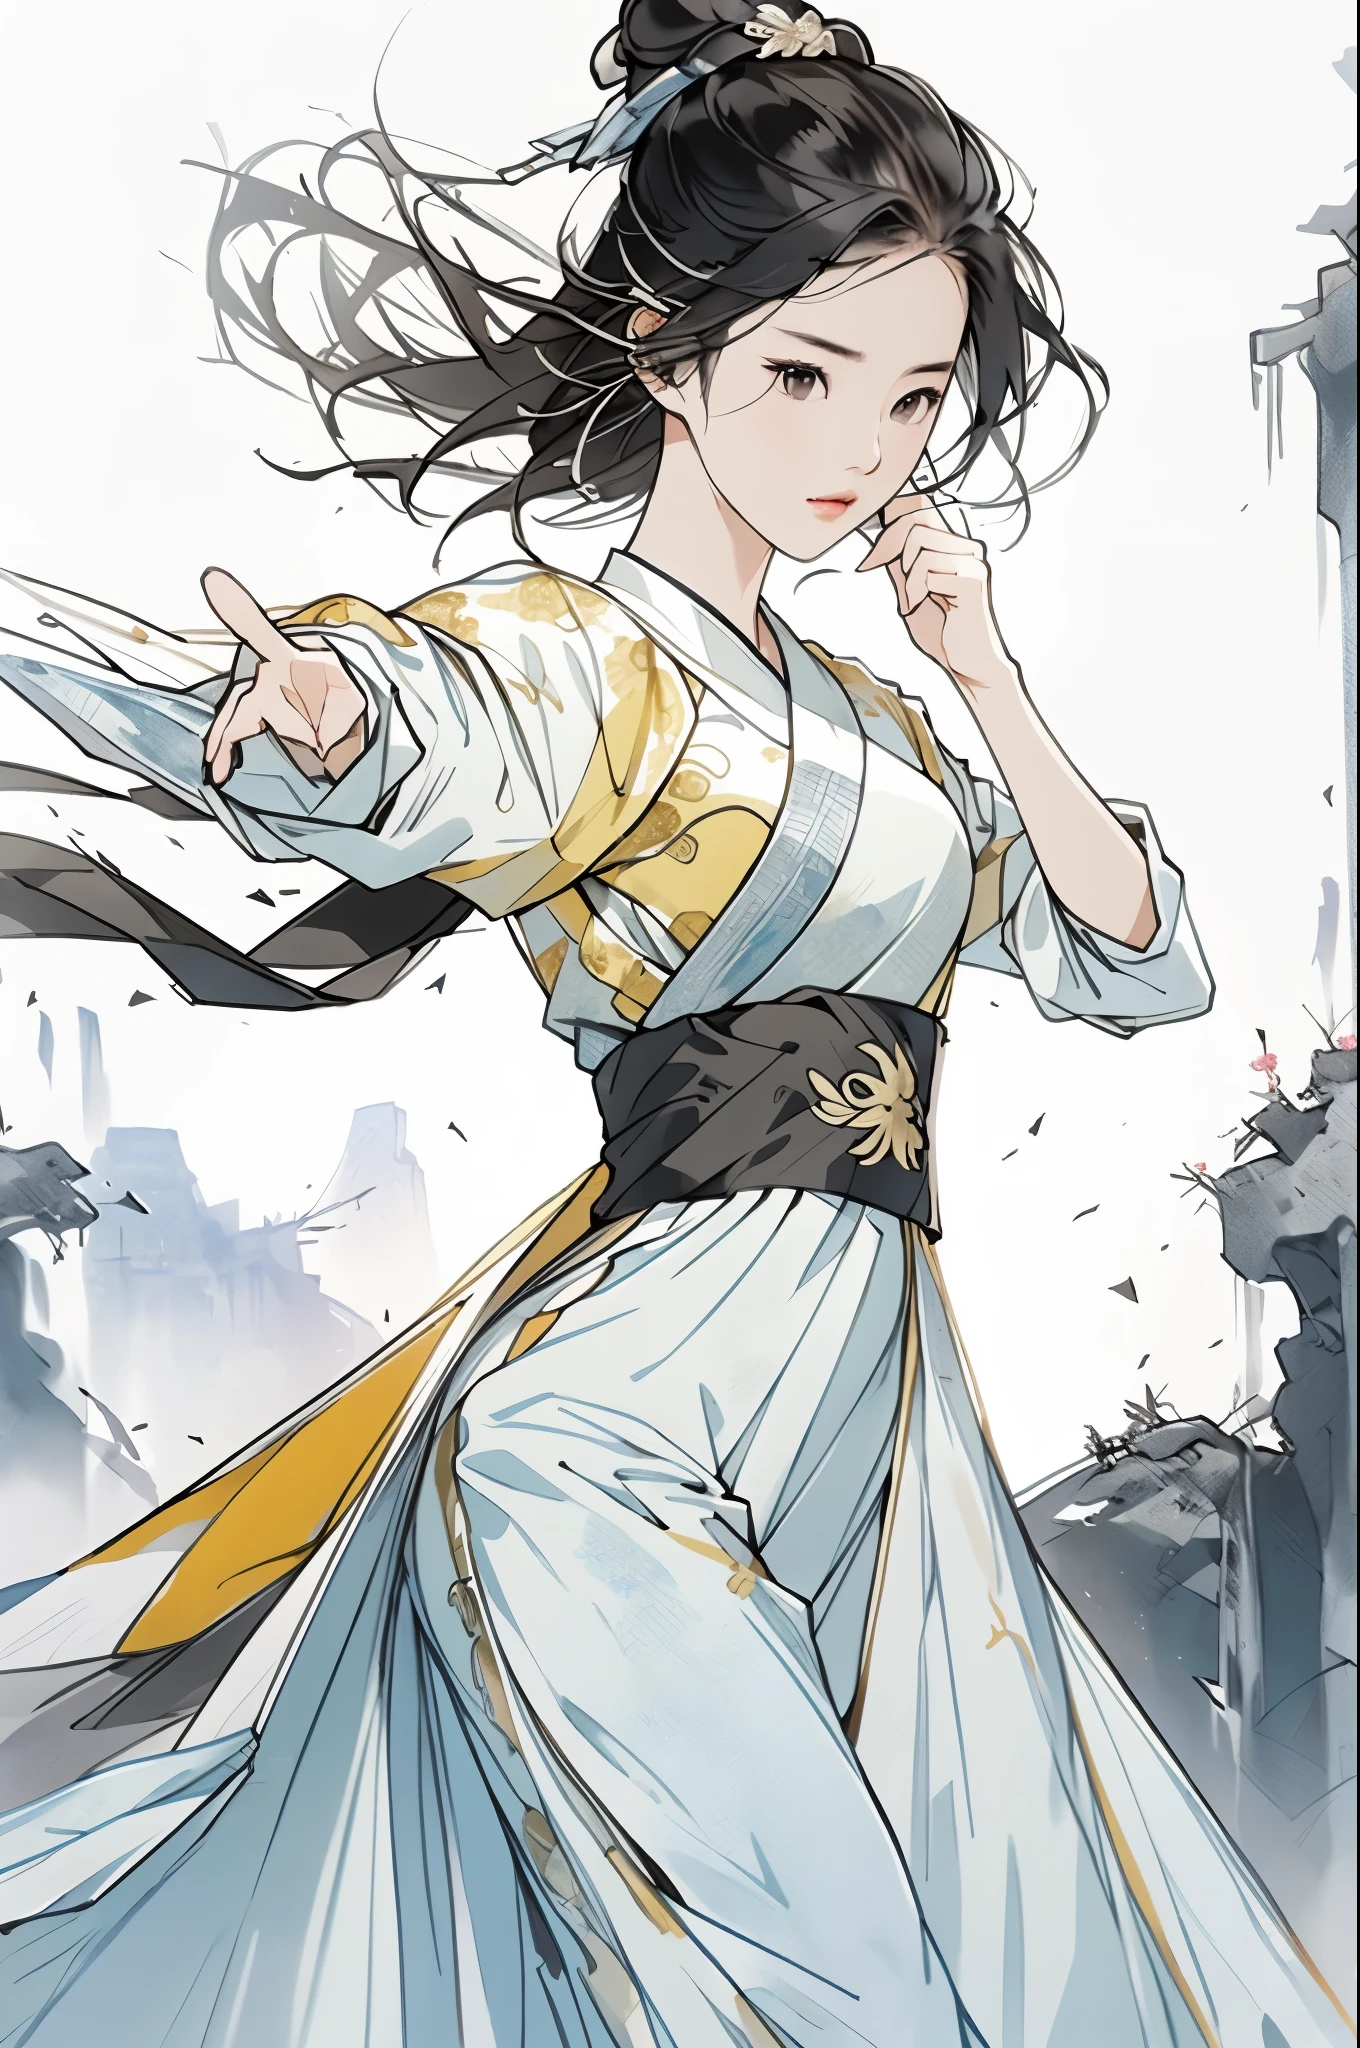 liuyifei, 1 Mädchen, Allein, gelbes traditionelles chinesisches Kleid, Kung Fu Stellung, einfacher Hintergrund, weißer Hintergrund, thomas.k